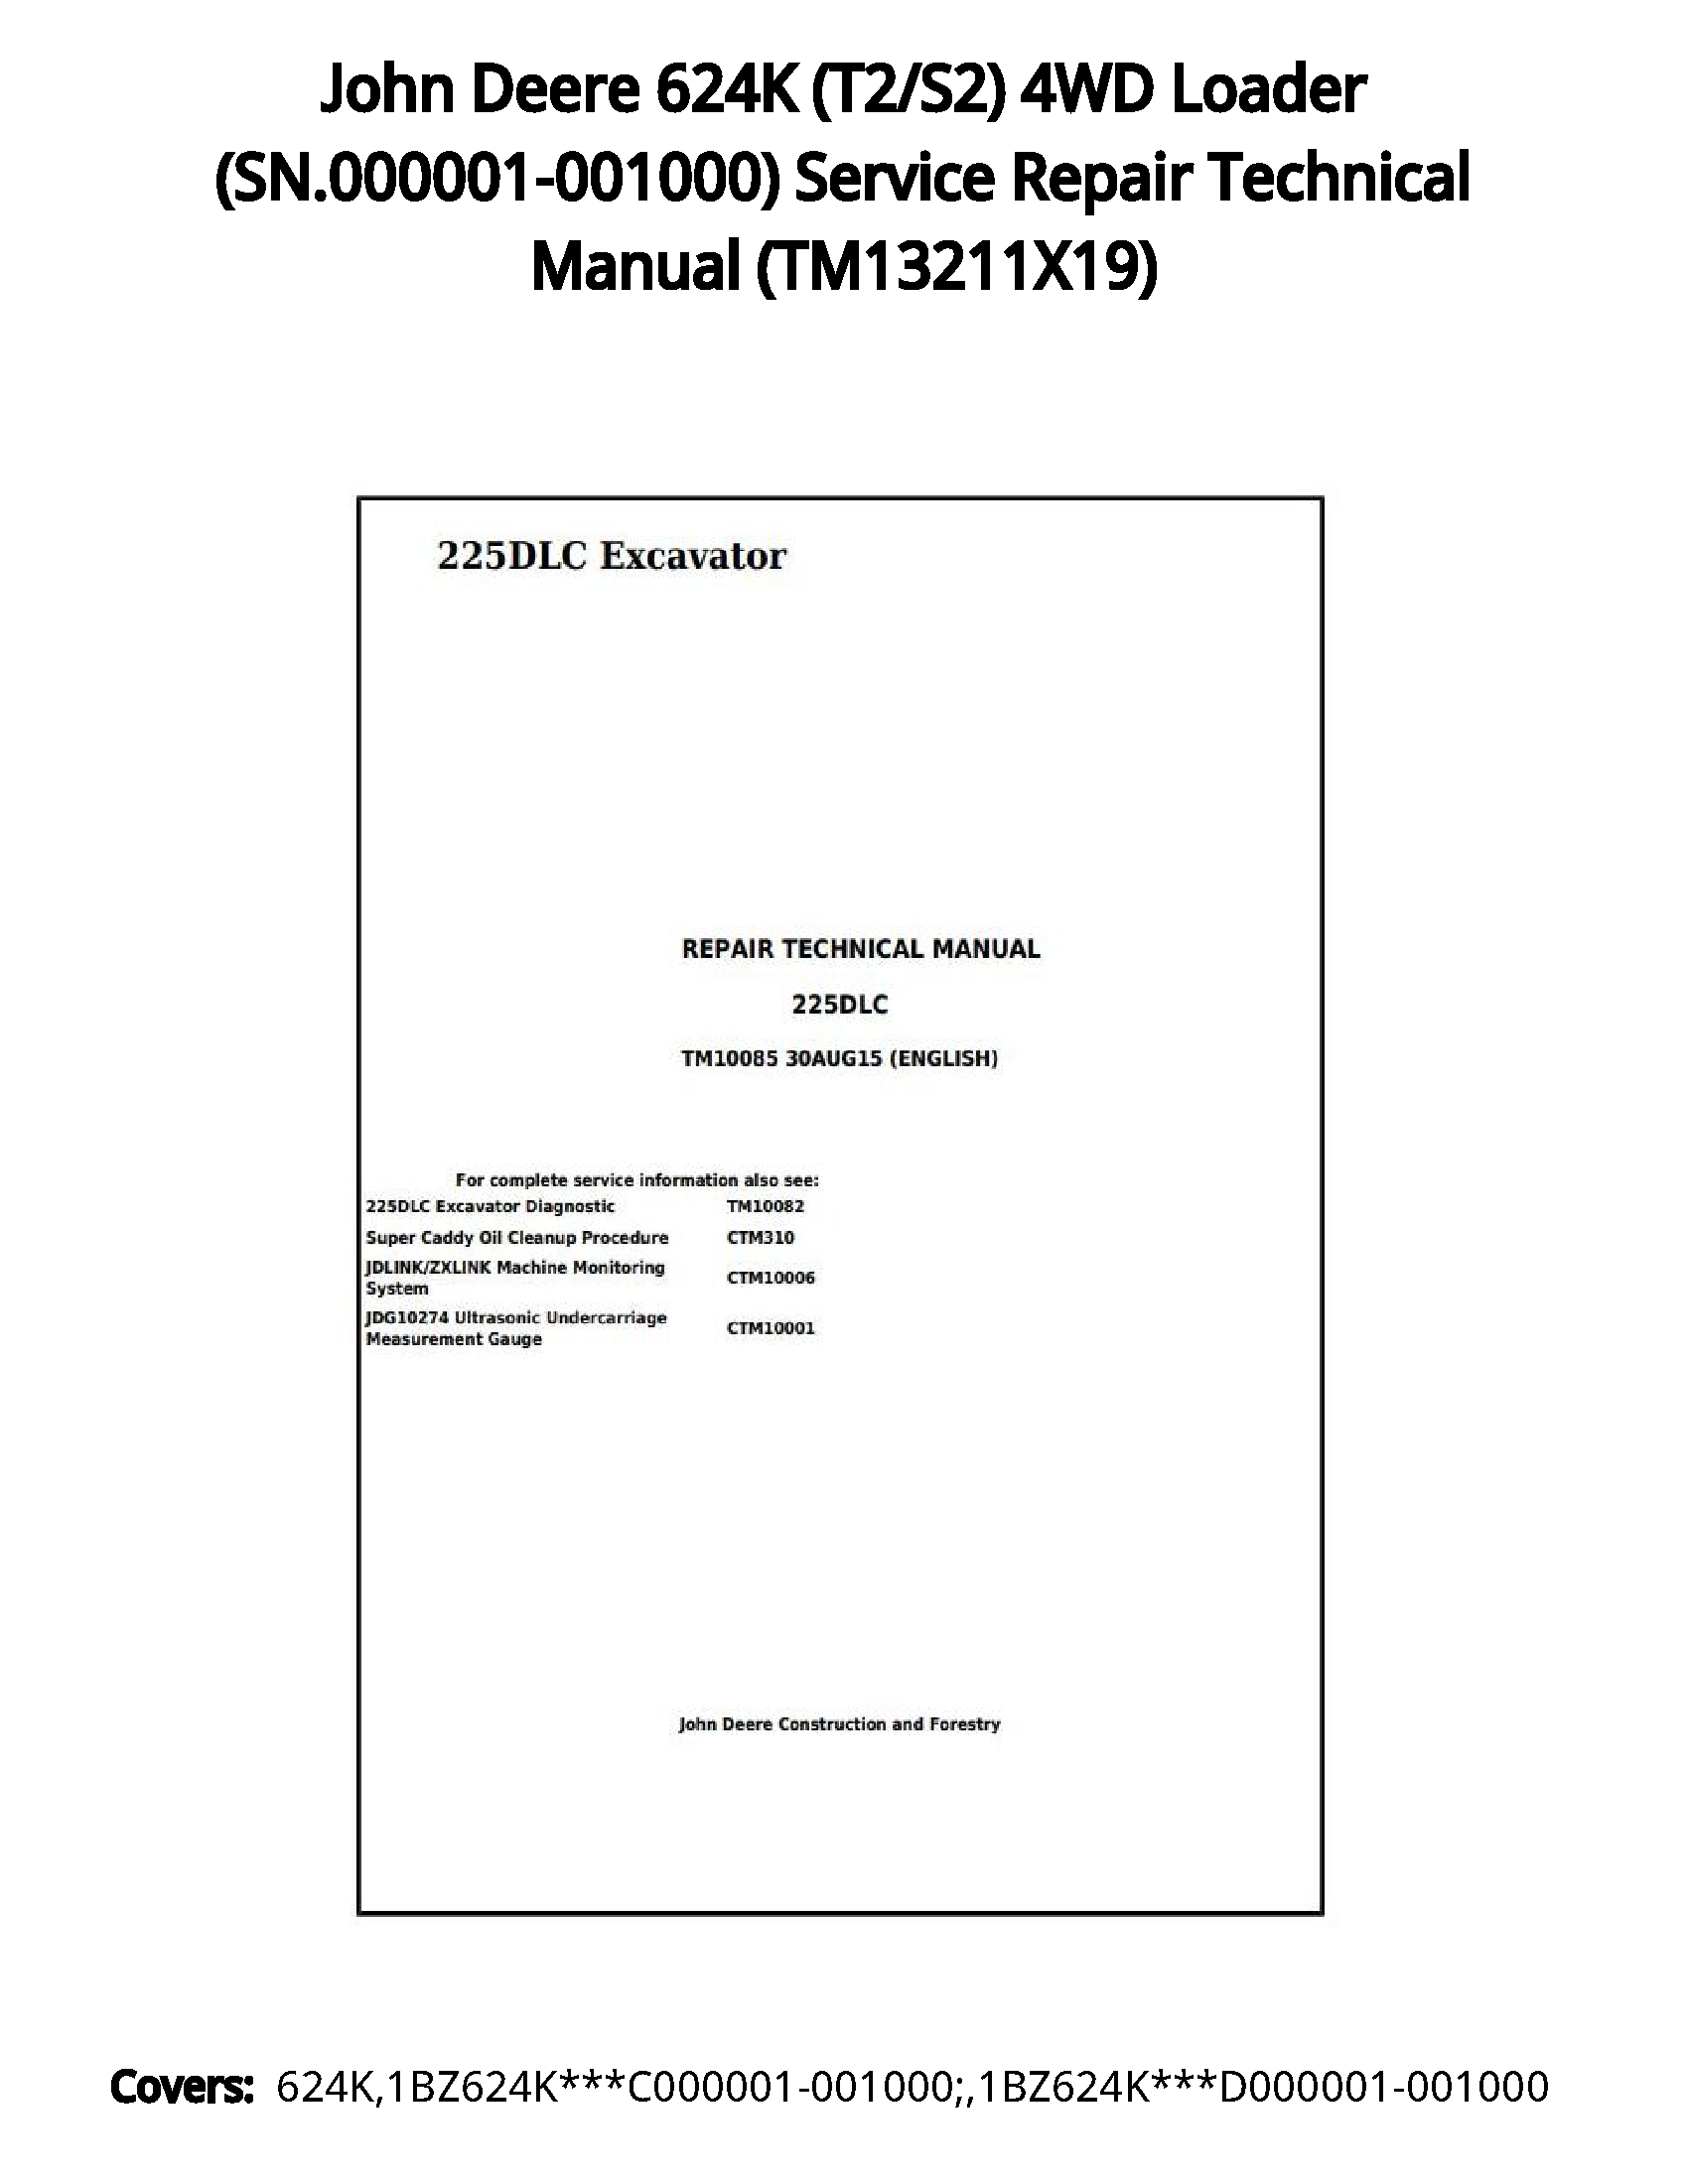 John Deere 624K (T2/S2) 4WD Loader (SN.000001-001000) Service Repair Technical Manual - TM13211X19